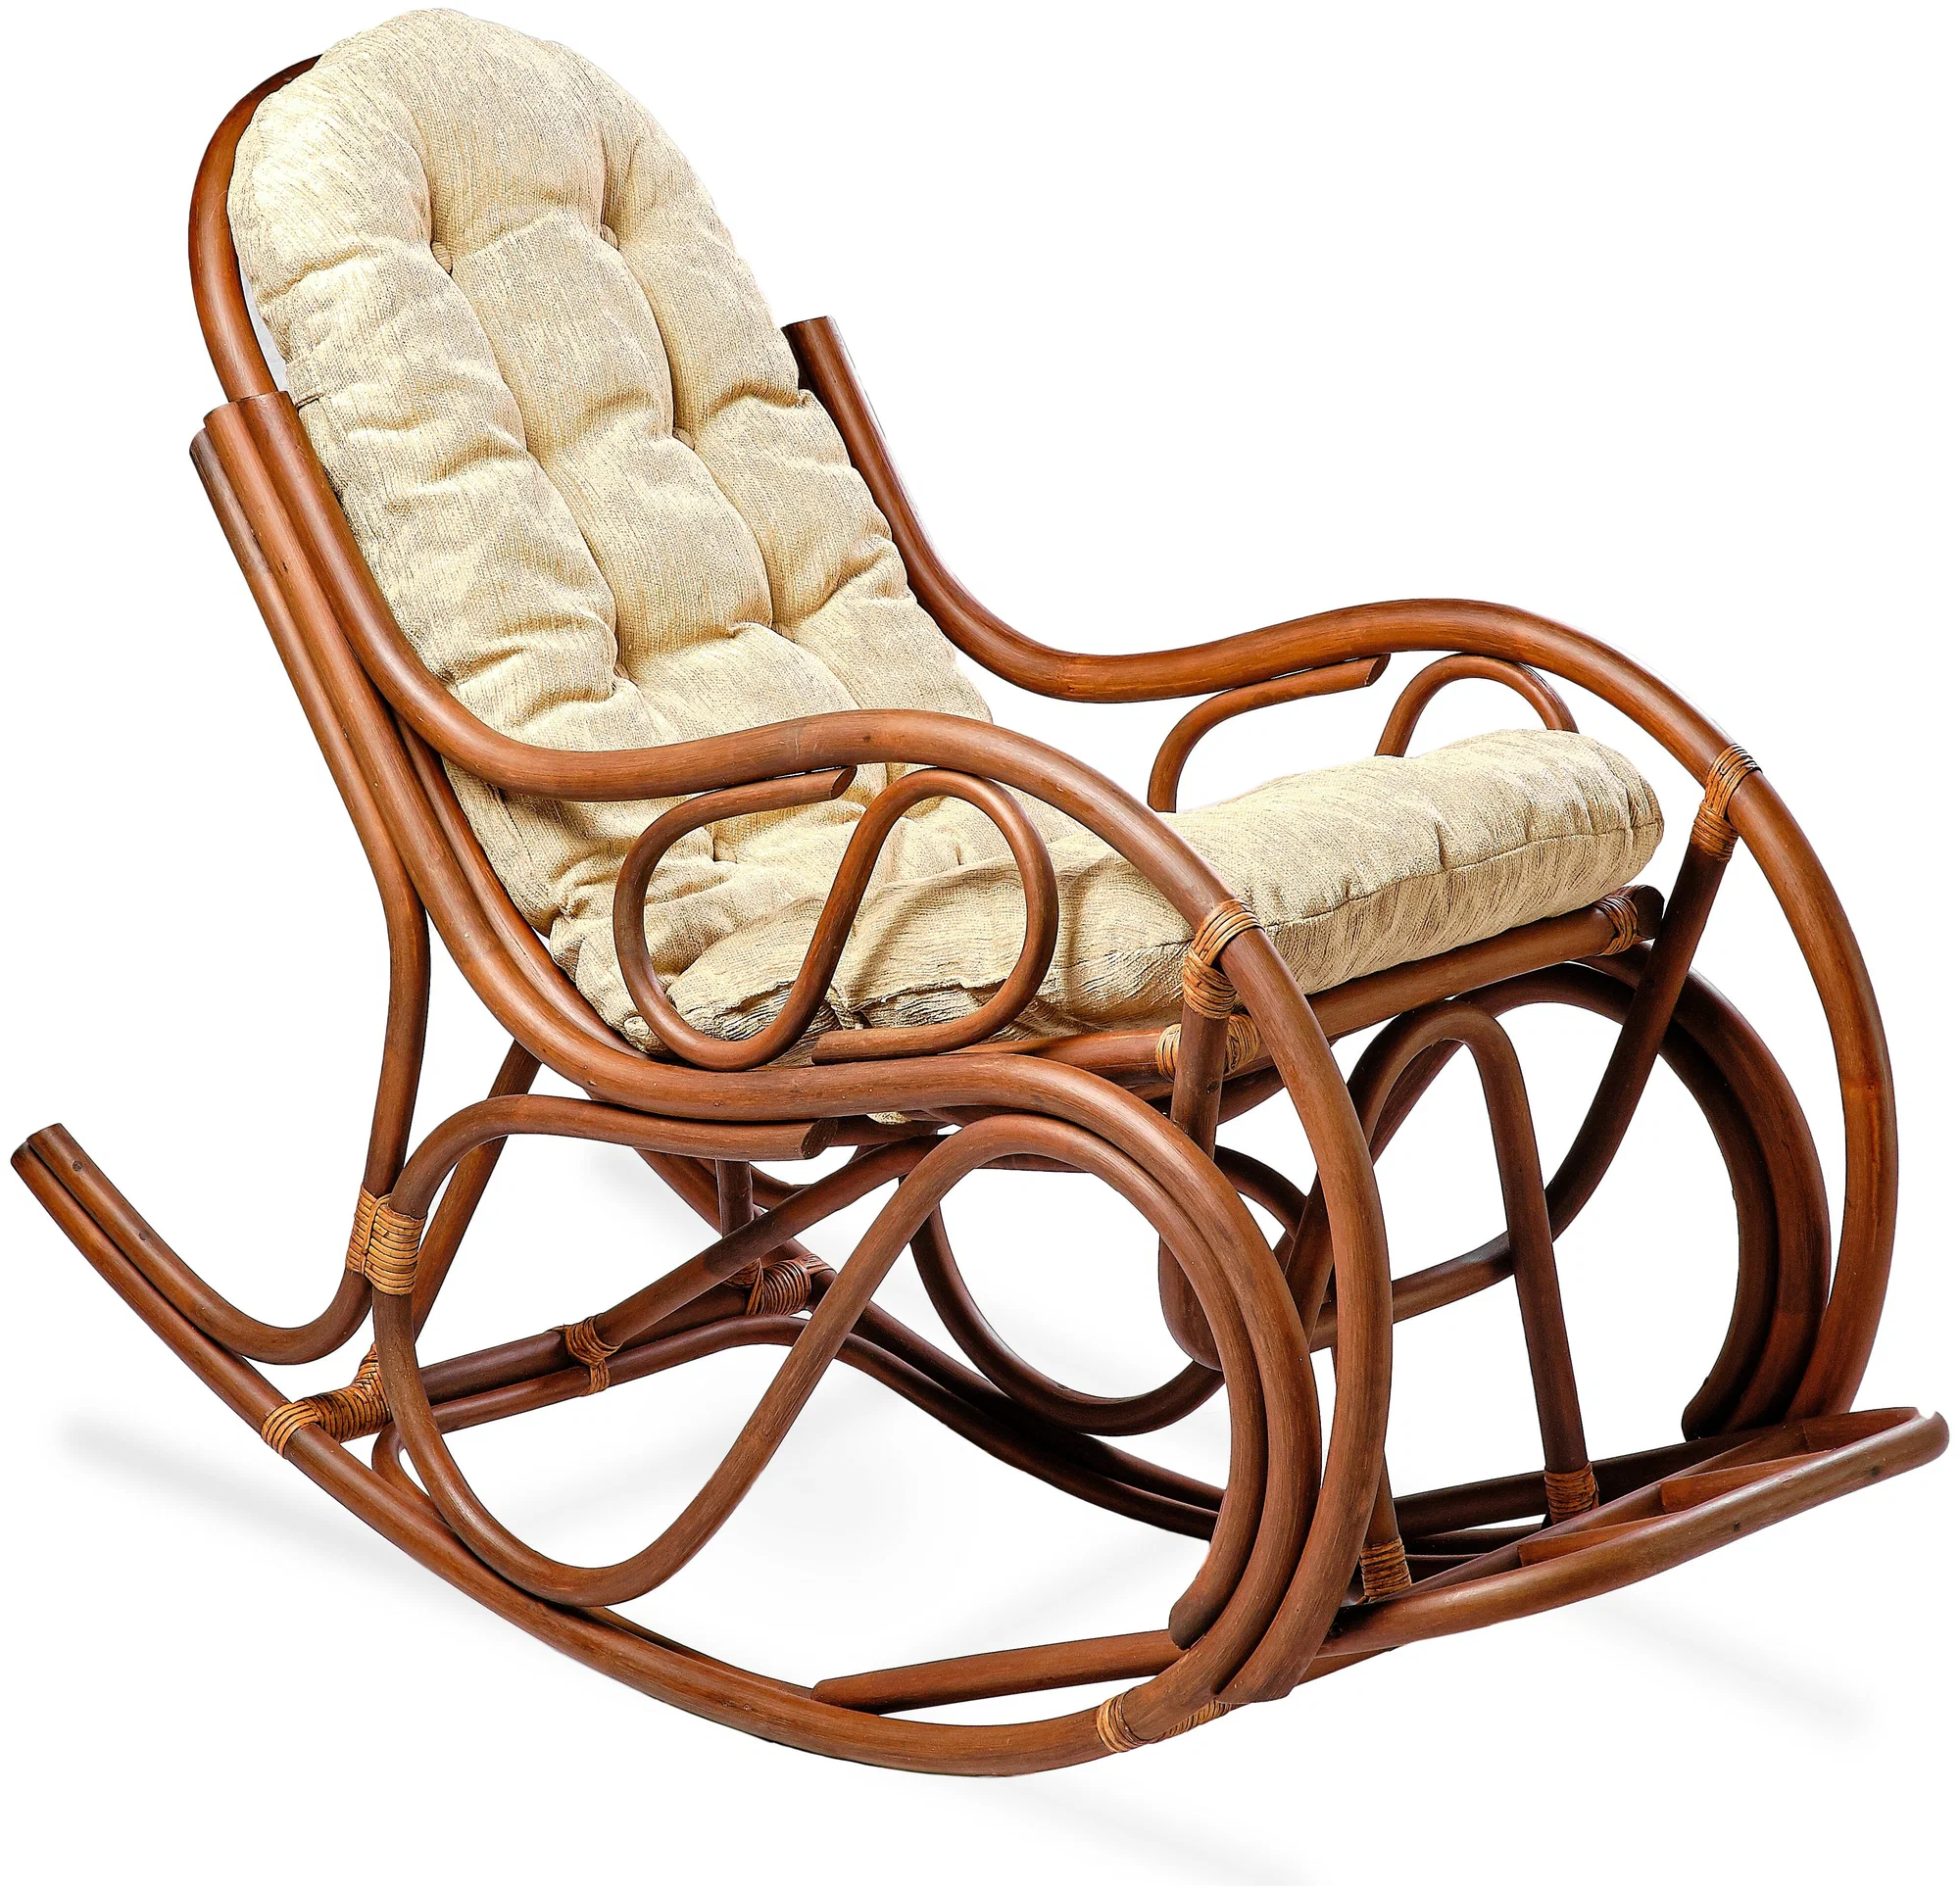 Кресло-качалка из натурального ротанга с толстой подушкой 05/04В, цвет орех матовый